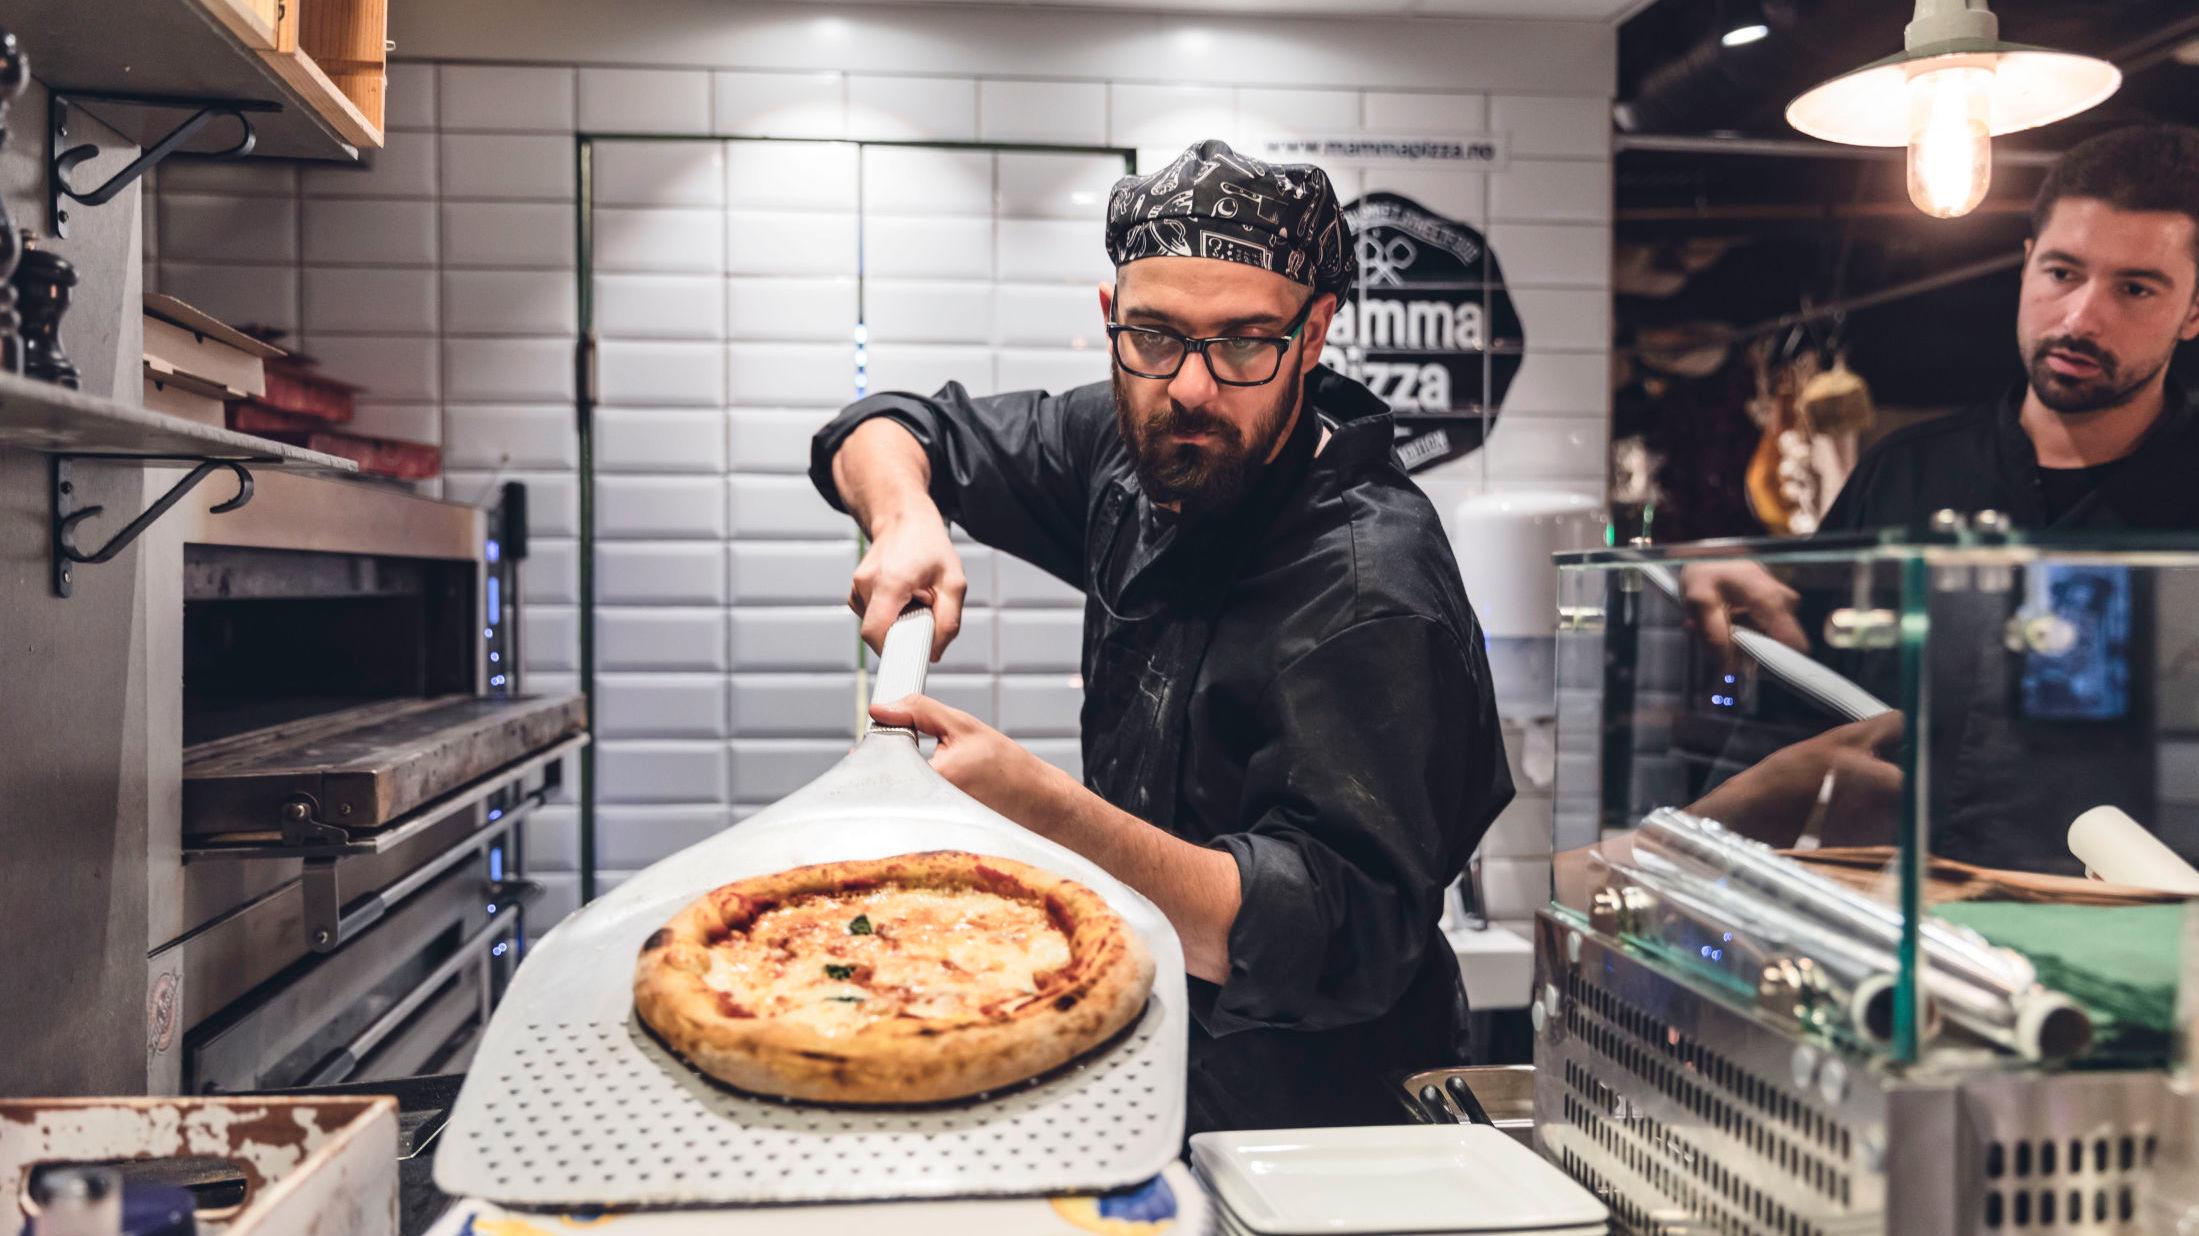 ALLORA: På Mamma Pizza tar Luca Furio Paolieri (til venstre) ut en rykende varm pizza av ovnen, mens Luca Zaninni følger med. Foto: Krister Sørbø/VG